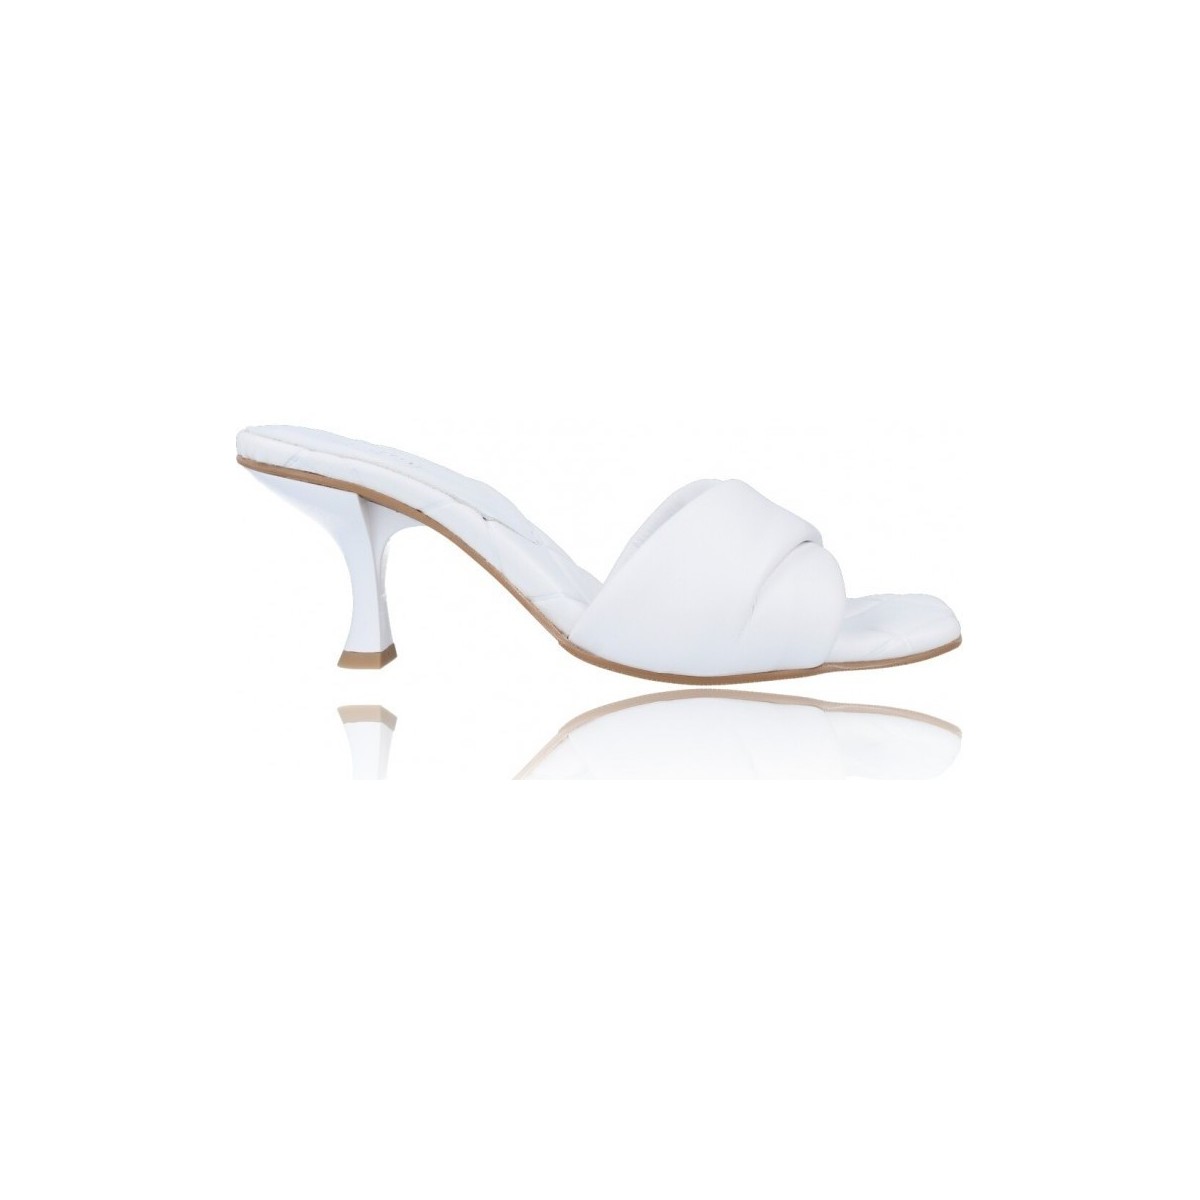 Zapatos Mujer Sandalias Calzados Vesga Zueco Sandalias de Piel para Mujer de Foos Marbella 01 Blanco